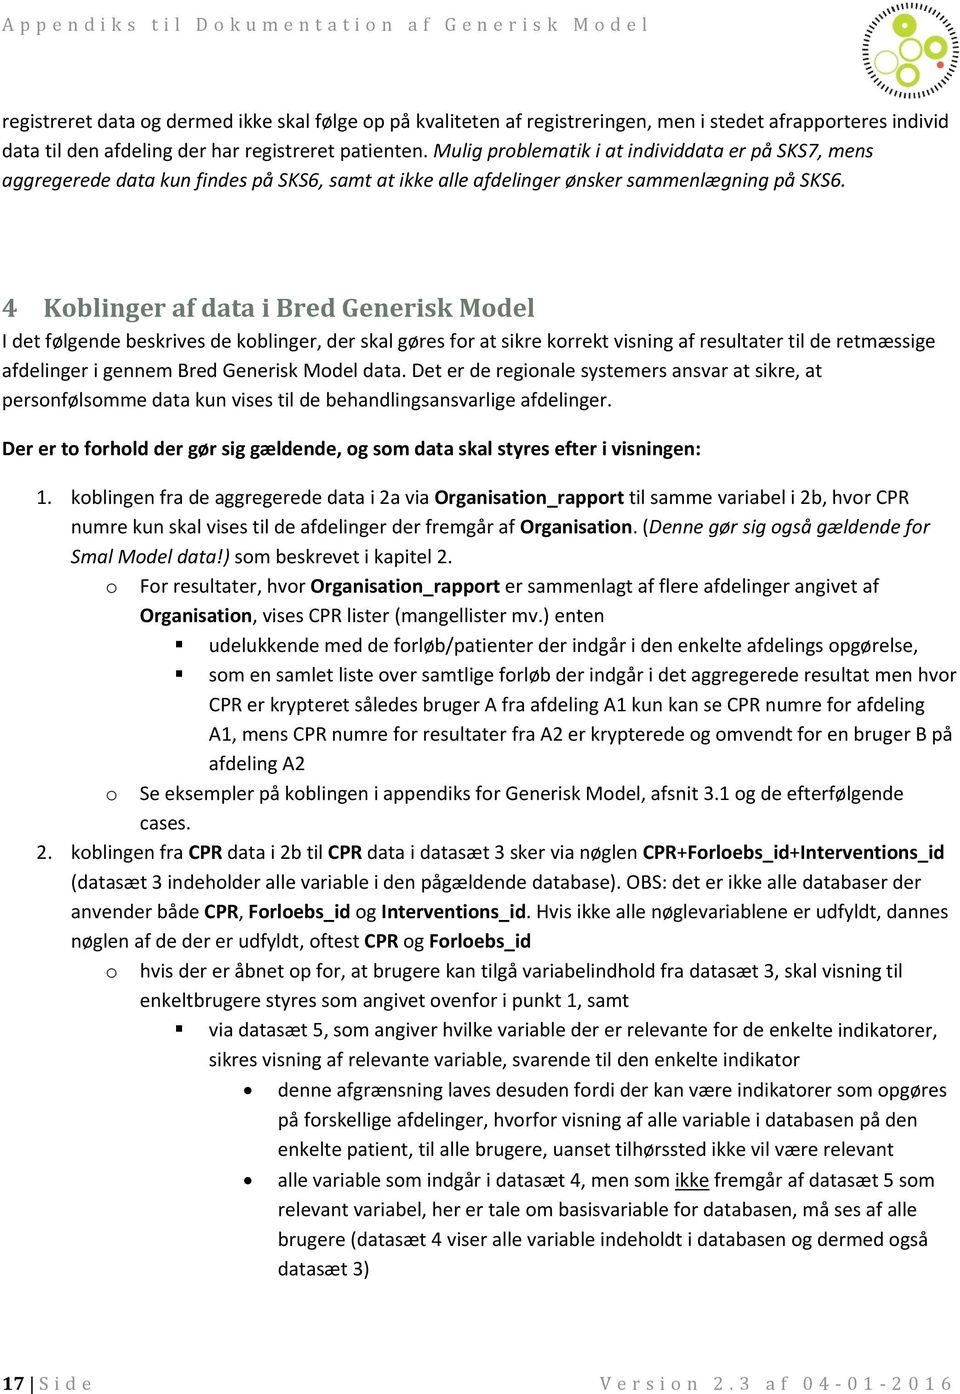 4 Koblinger af data i Bred Generisk Model I det følgende beskrives de koblinger, der skal gøres for at sikre korrekt visning af resultater til de retmæssige afdelinger i gennem Bred Generisk Model